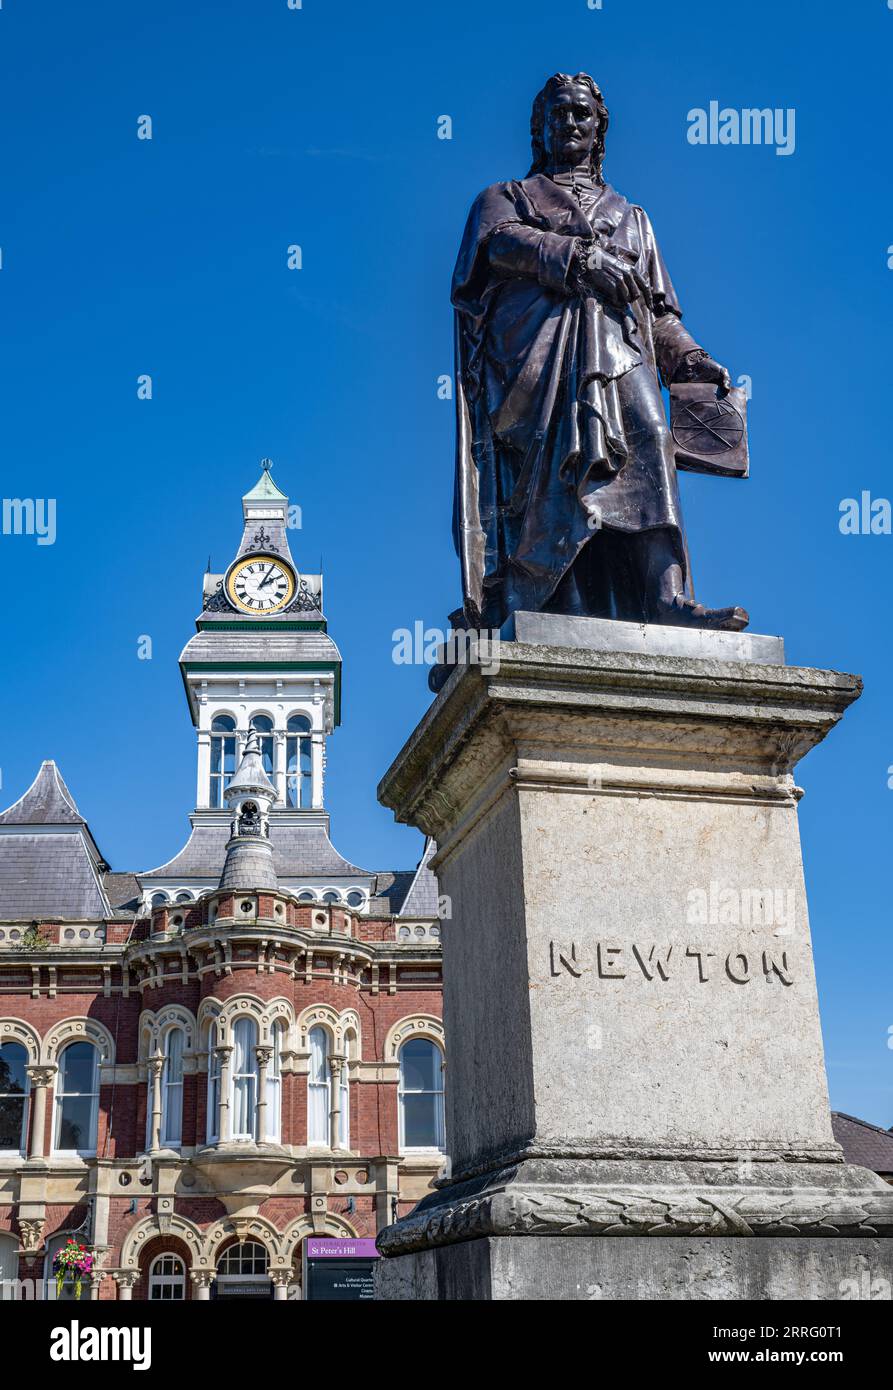 St Peters Hill Grantham Lincolnshire – Statue von Sir Isaac Newton, der in der Stadt zur Schule ging, vor einem Sommerhimmel mit der Town Guildhall im Hintergrund Stockfoto